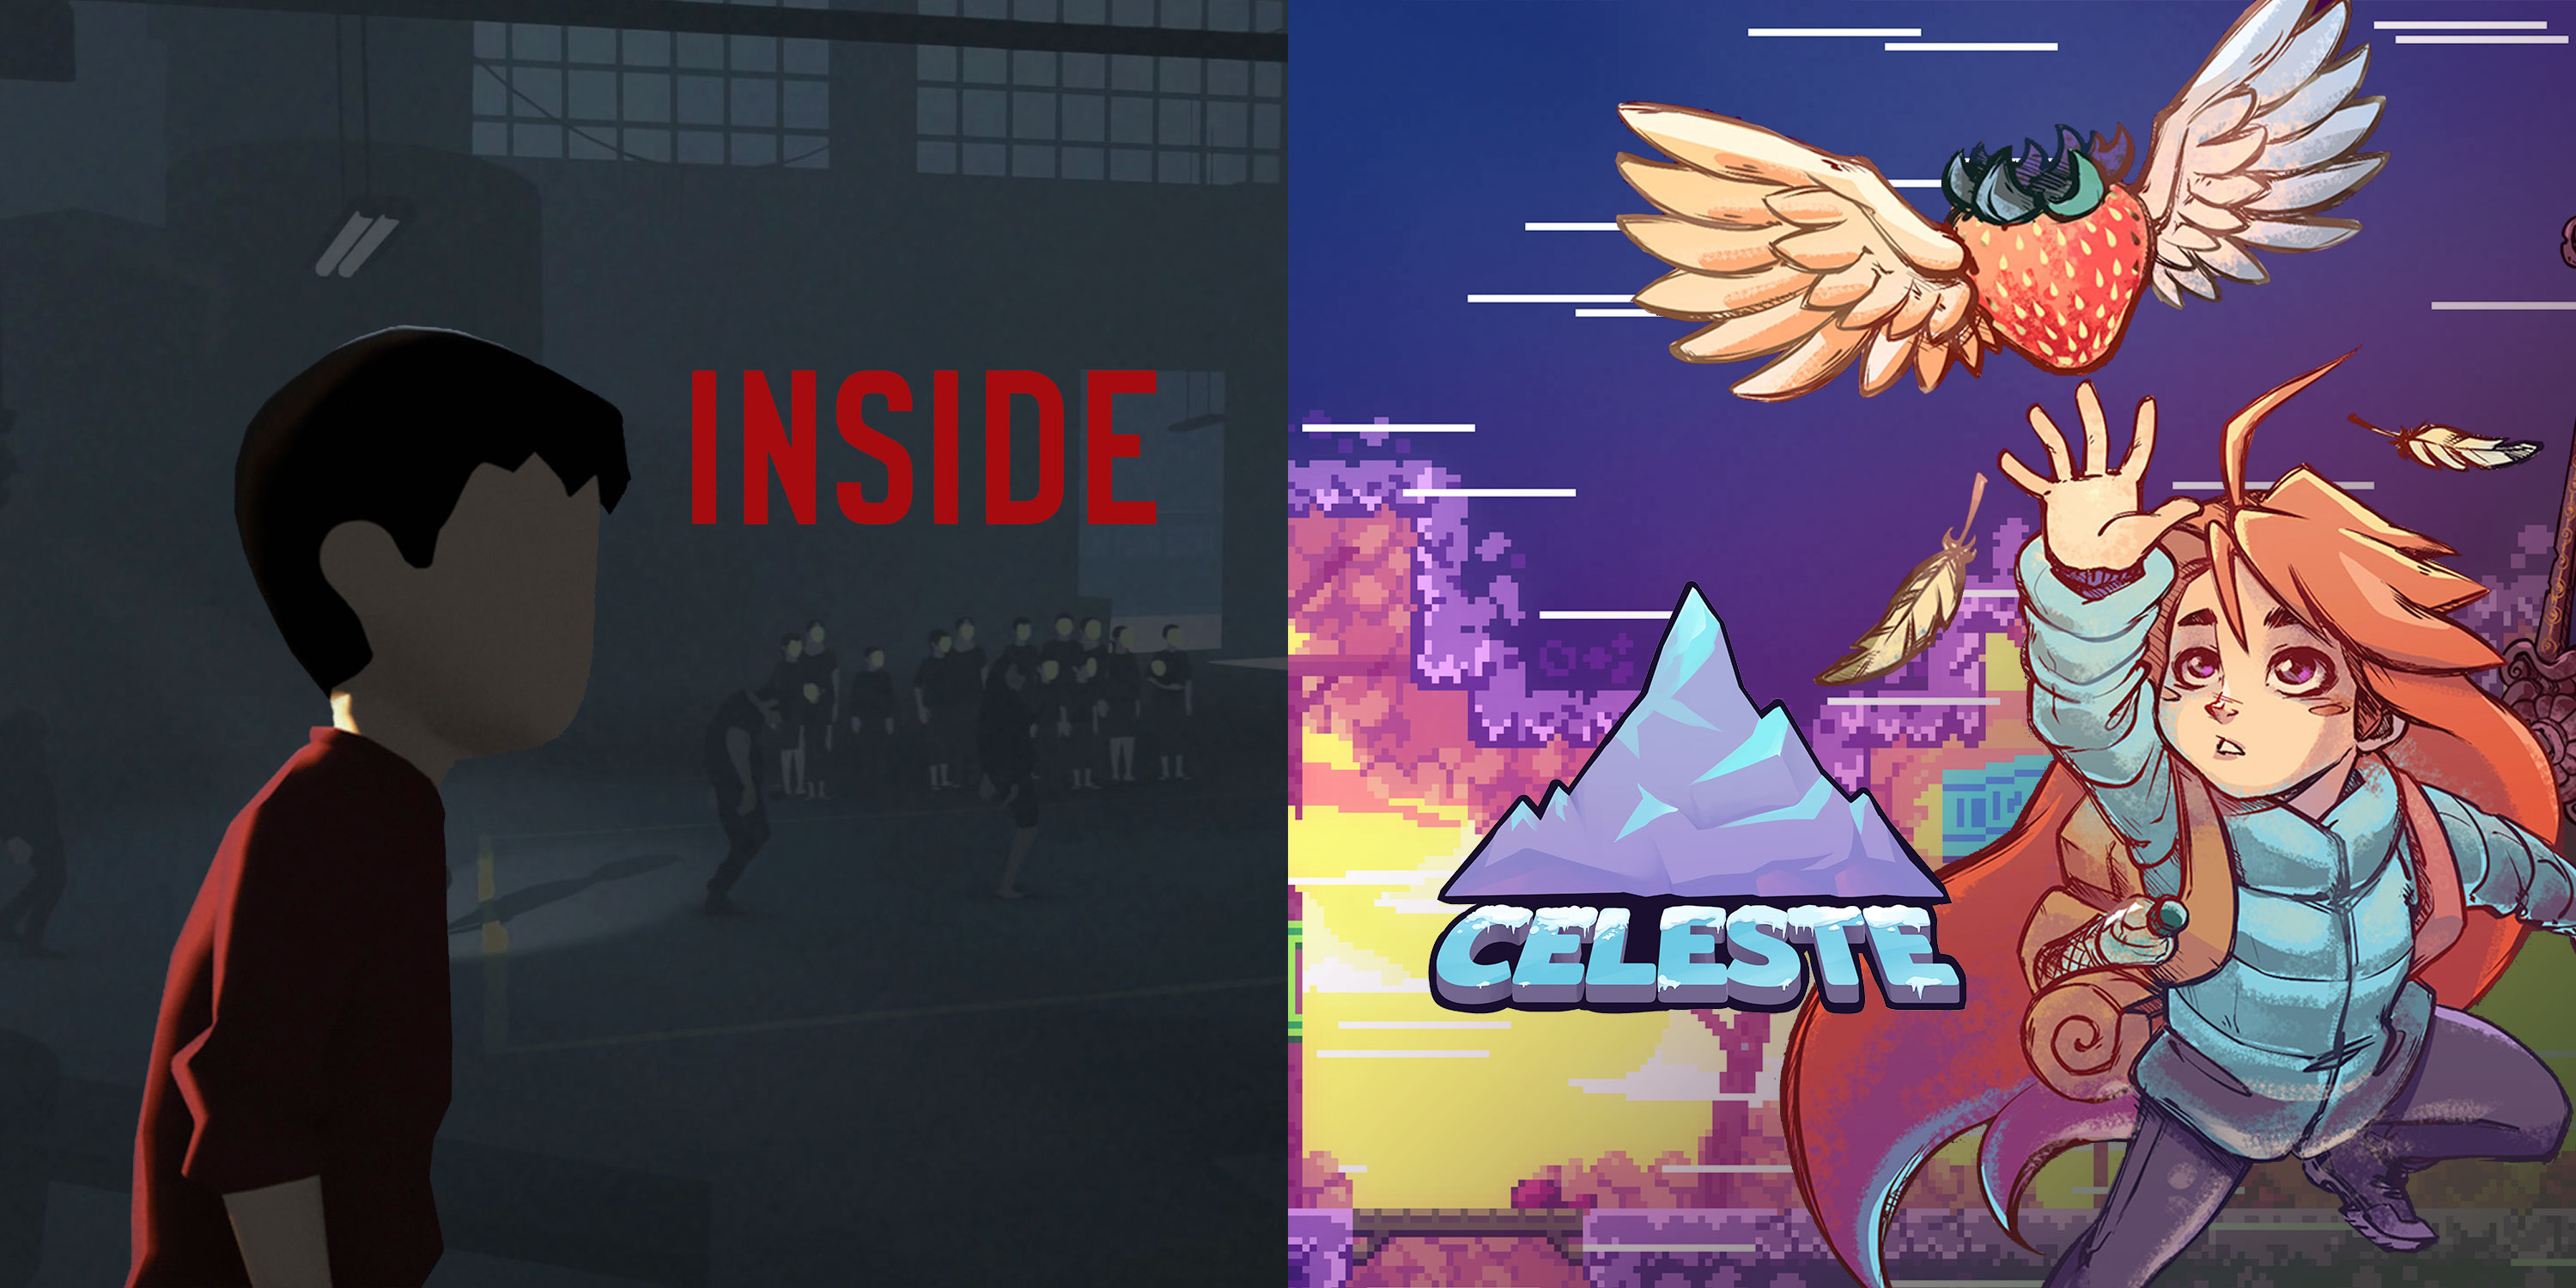 INSIDE и Celeste можно бесплатно выкупить в магазине Epic Games до 5 сентября